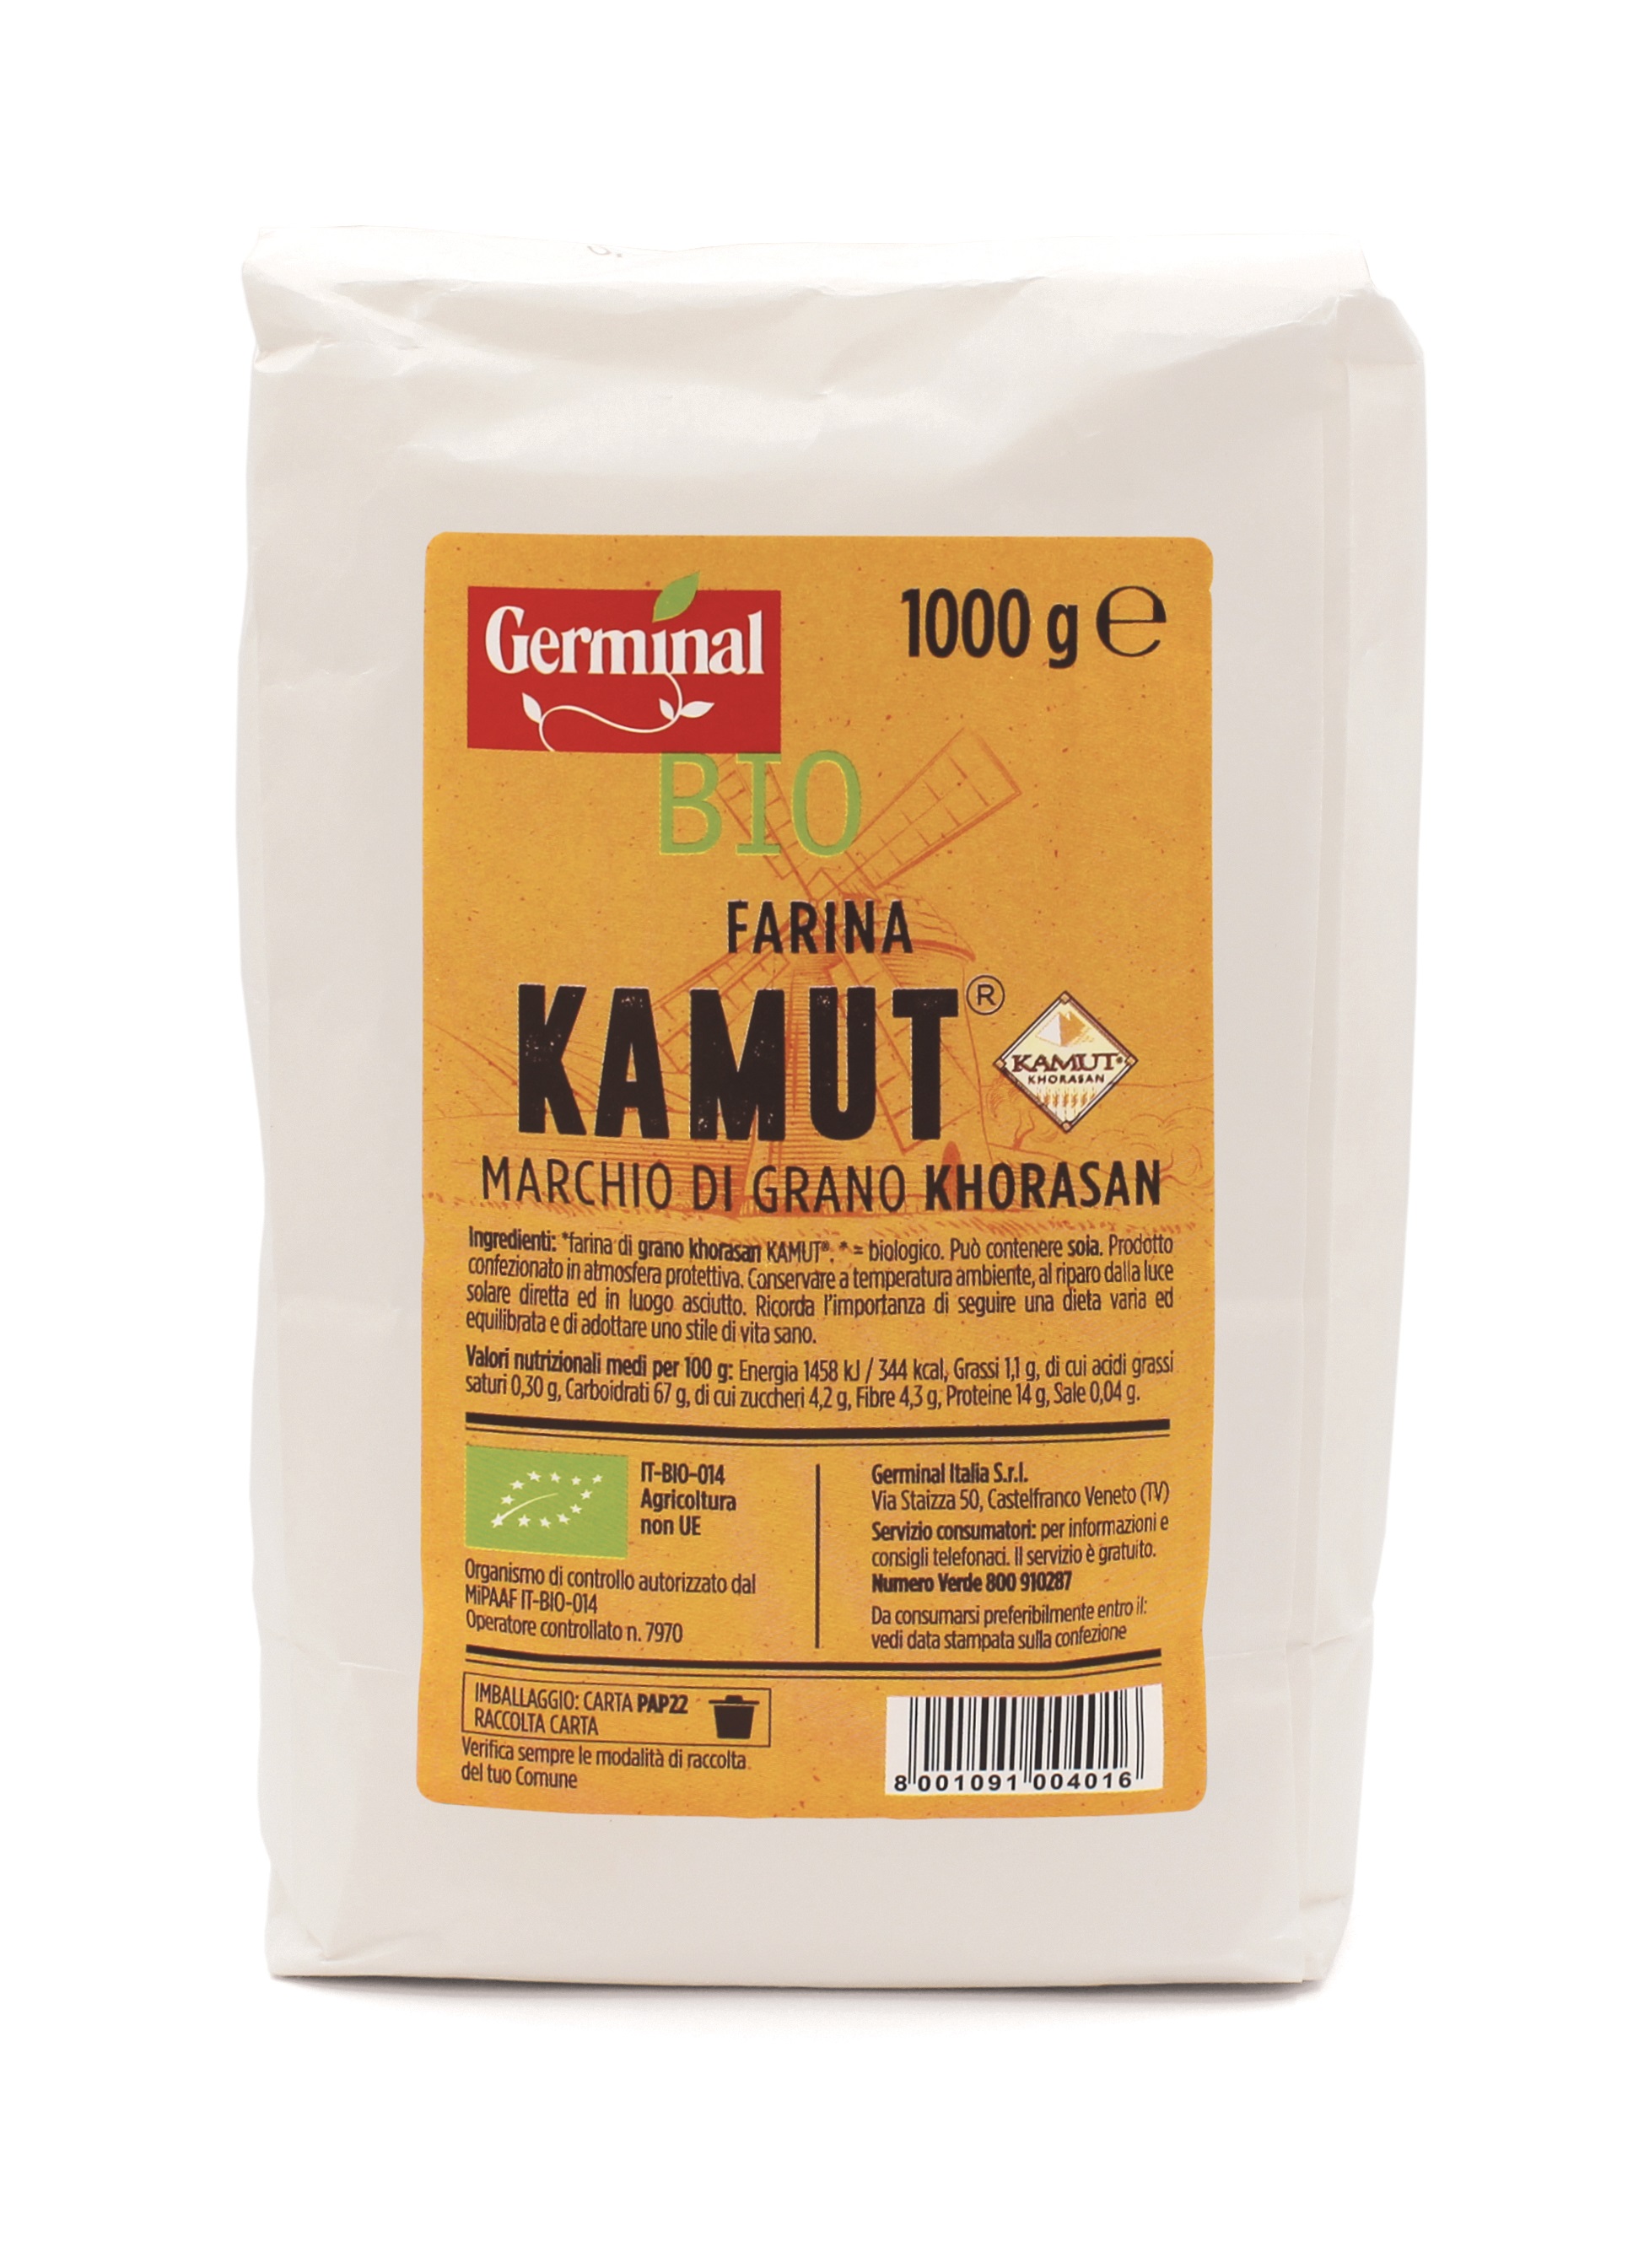 Immagine confezione Farina Di Kamut ® - Marchio di grano khorasan Germinal Bio